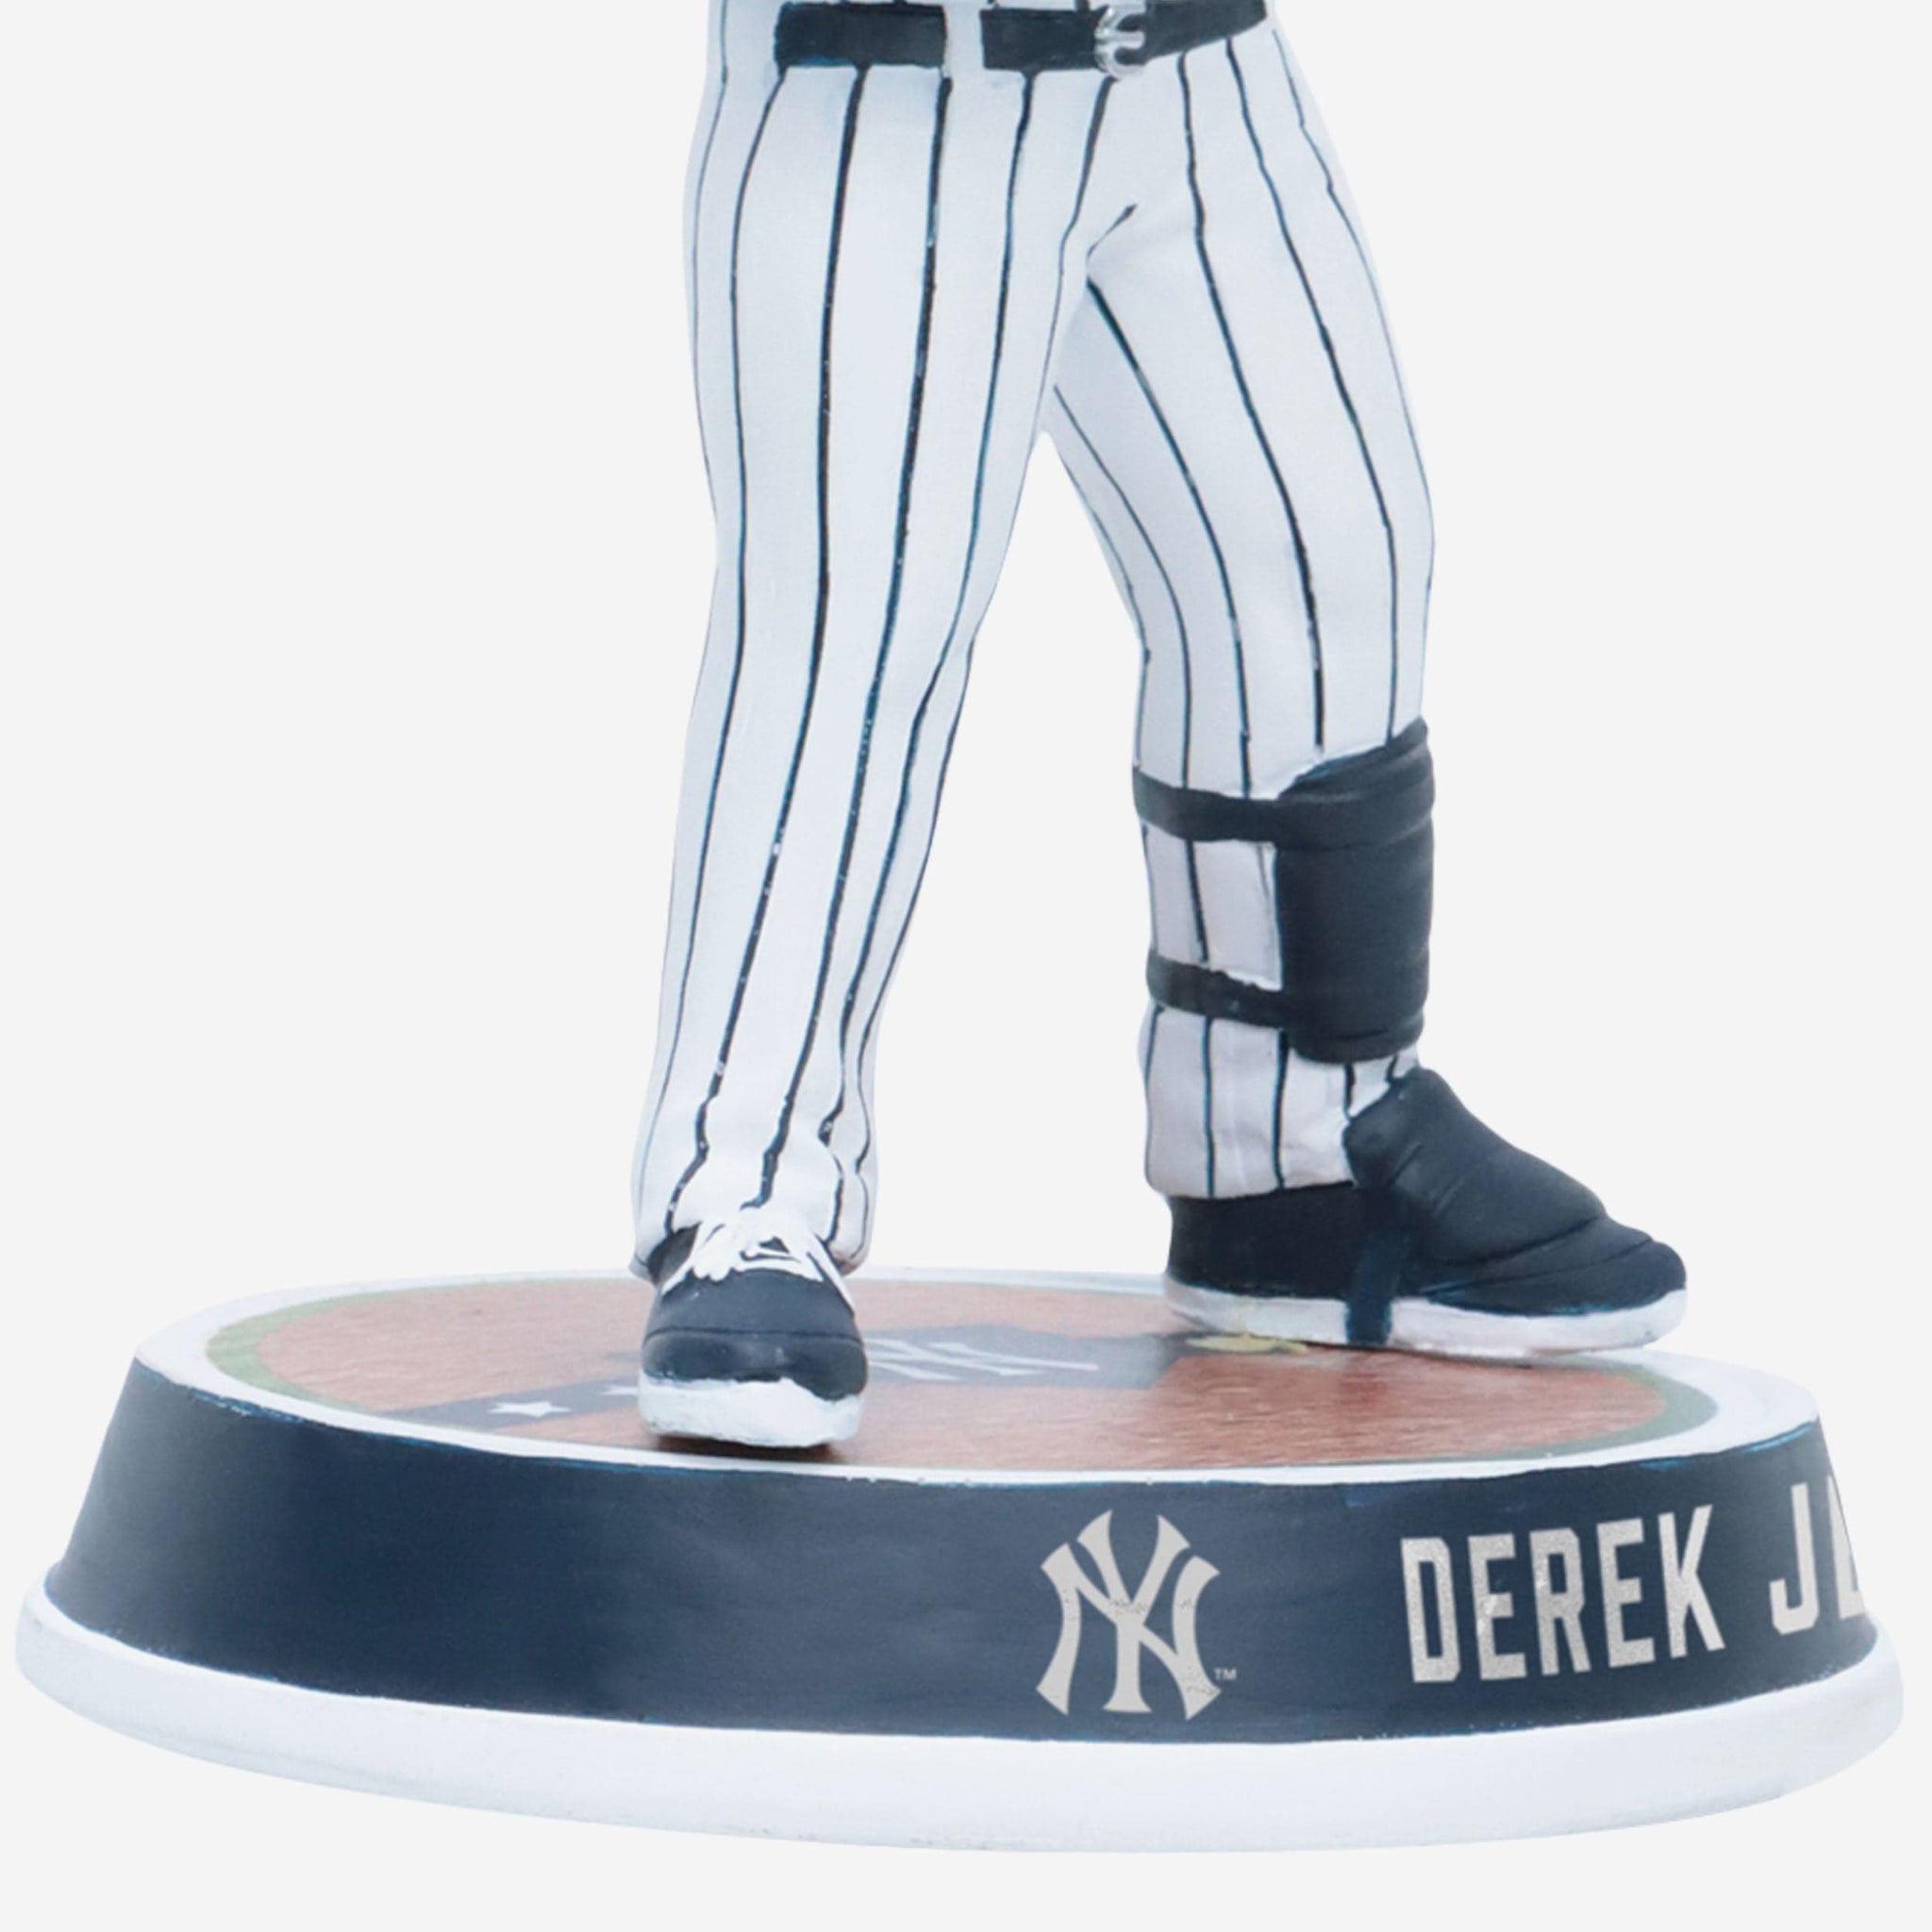 Derek Jeter New York Yankees Captain Bobblehead FOCO